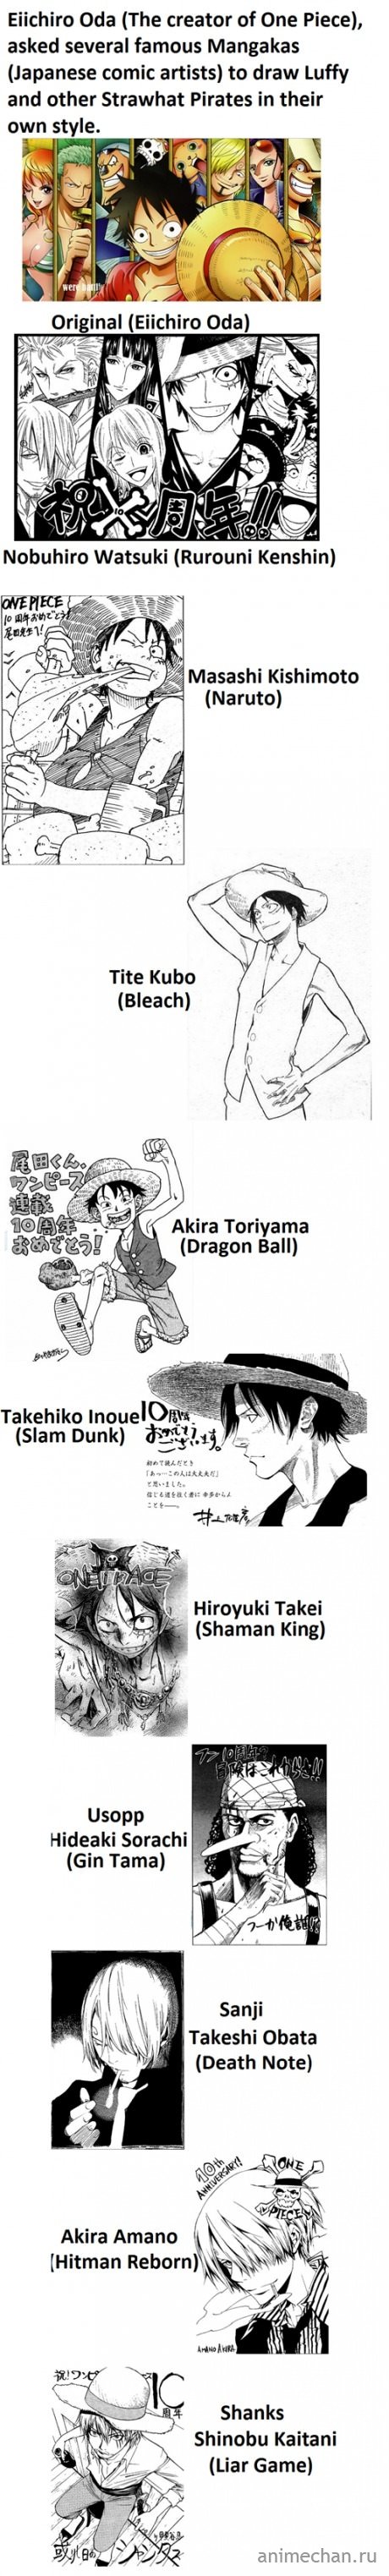 One Piece разных стилей